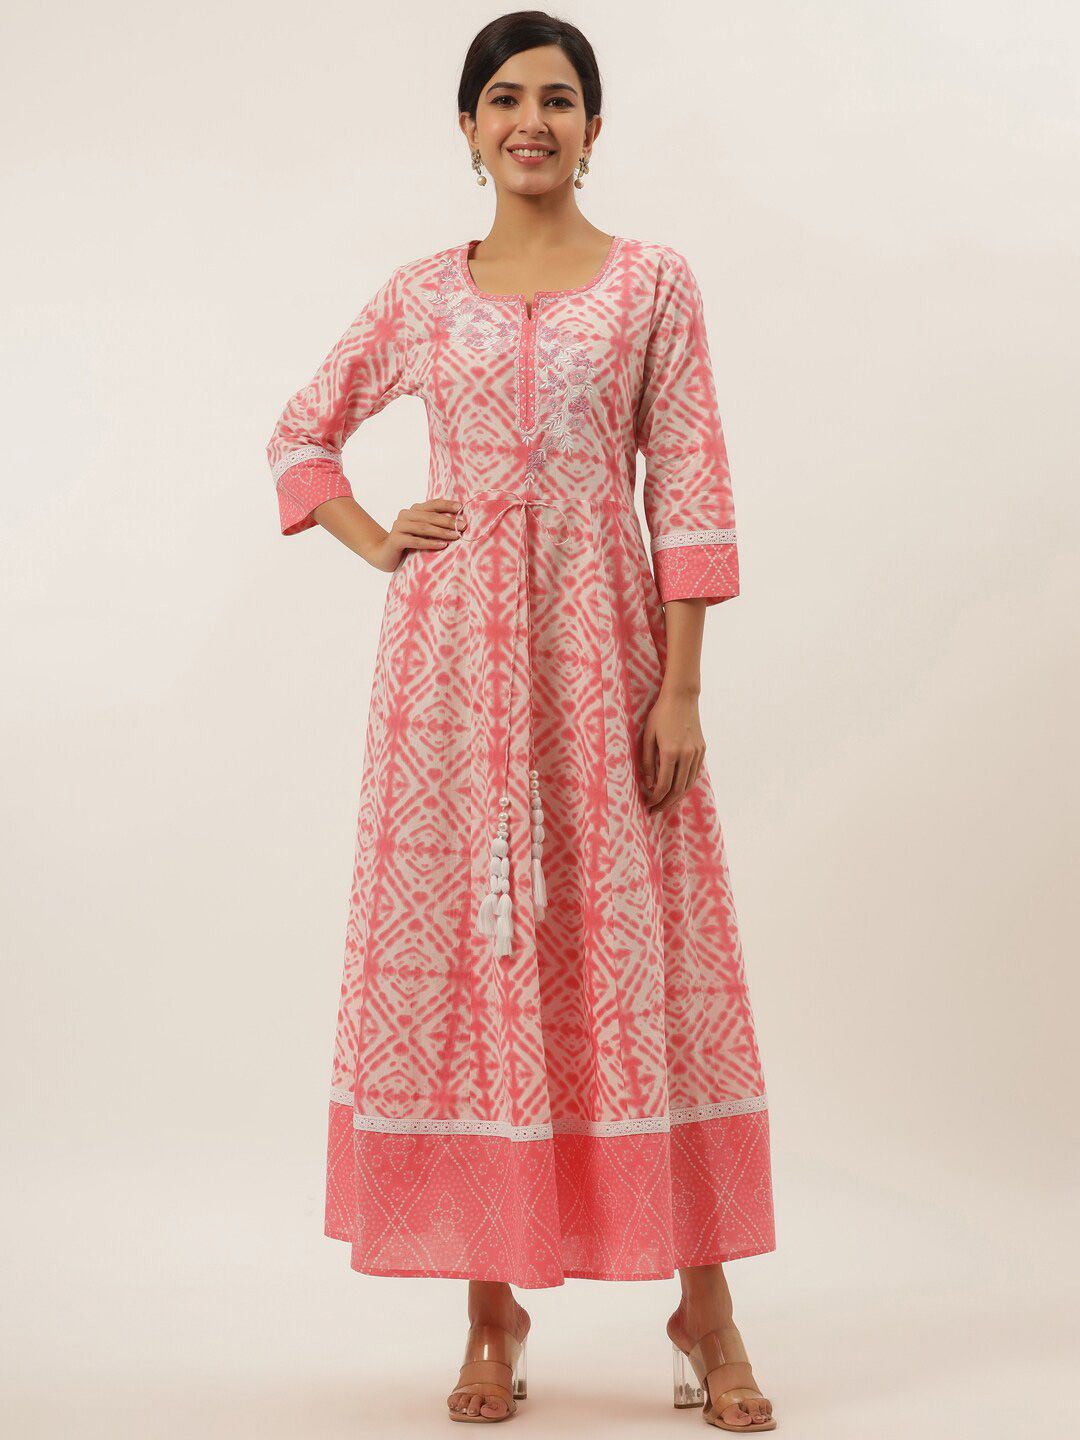 Yufta Peach-Coloured Embroidery Cotton Ethnic Maxi Dress Price in India